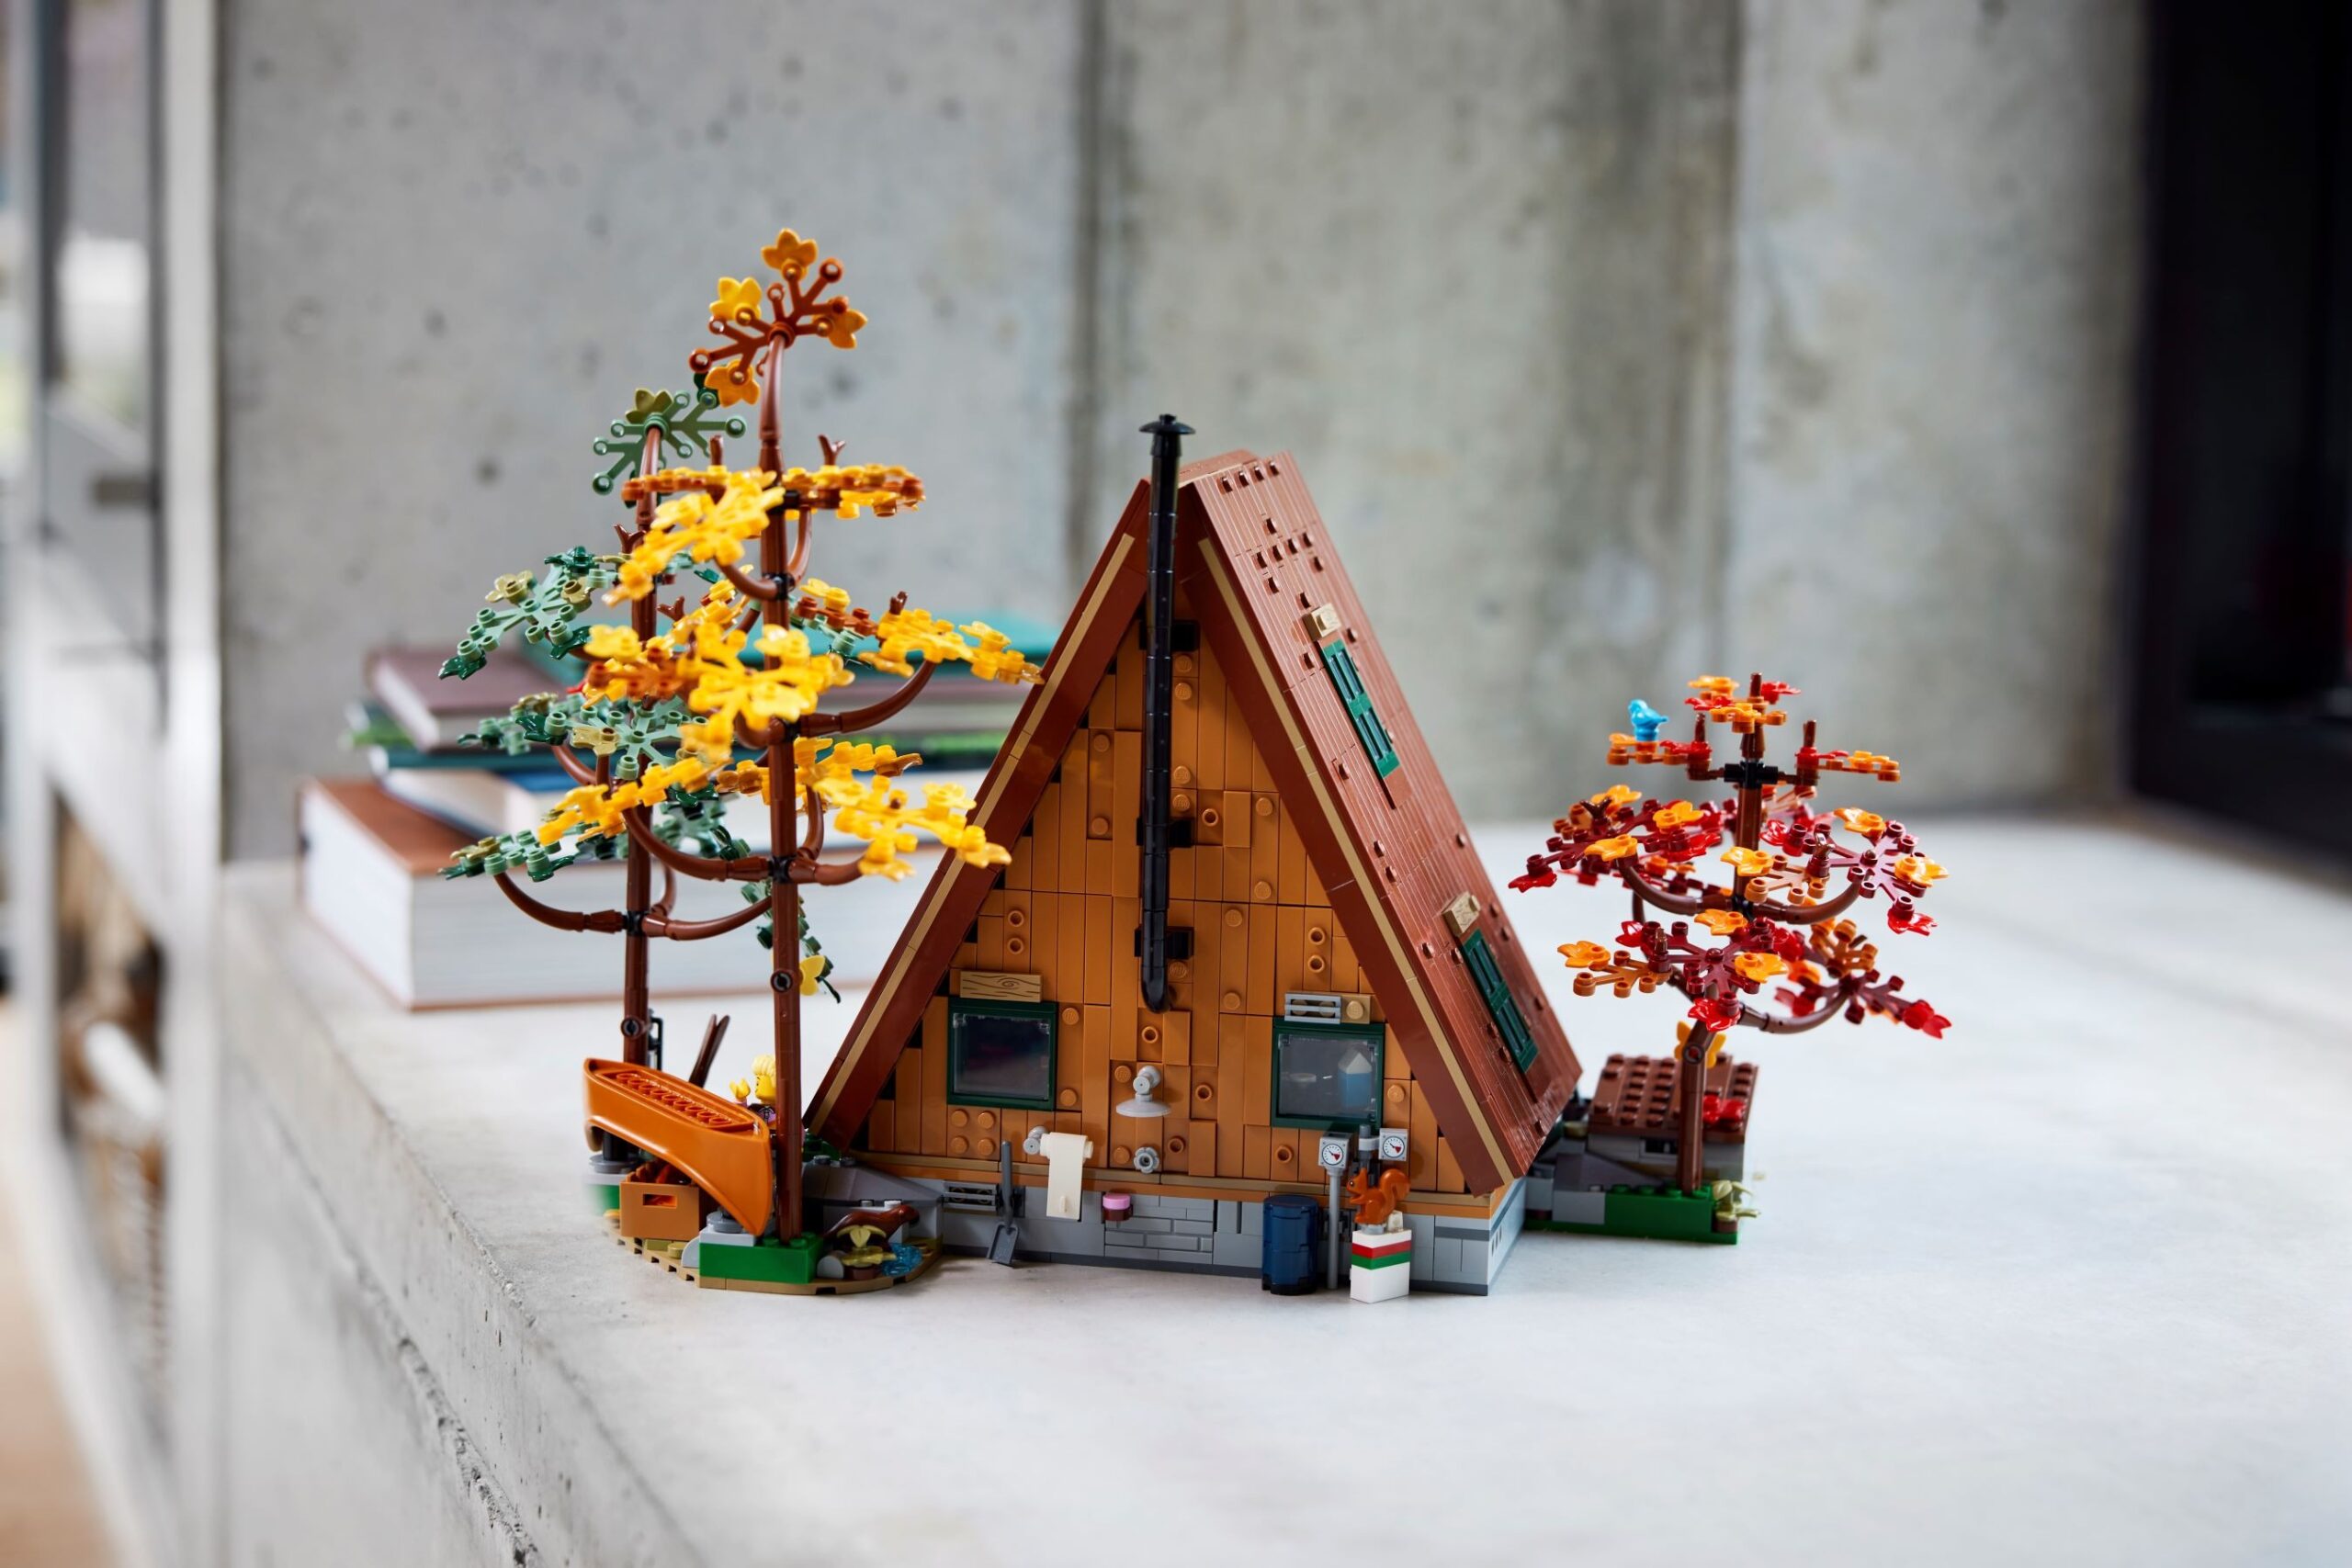 LEGO Orchidea: il set regalo PERFETTO per San Valentino IN SCONTO